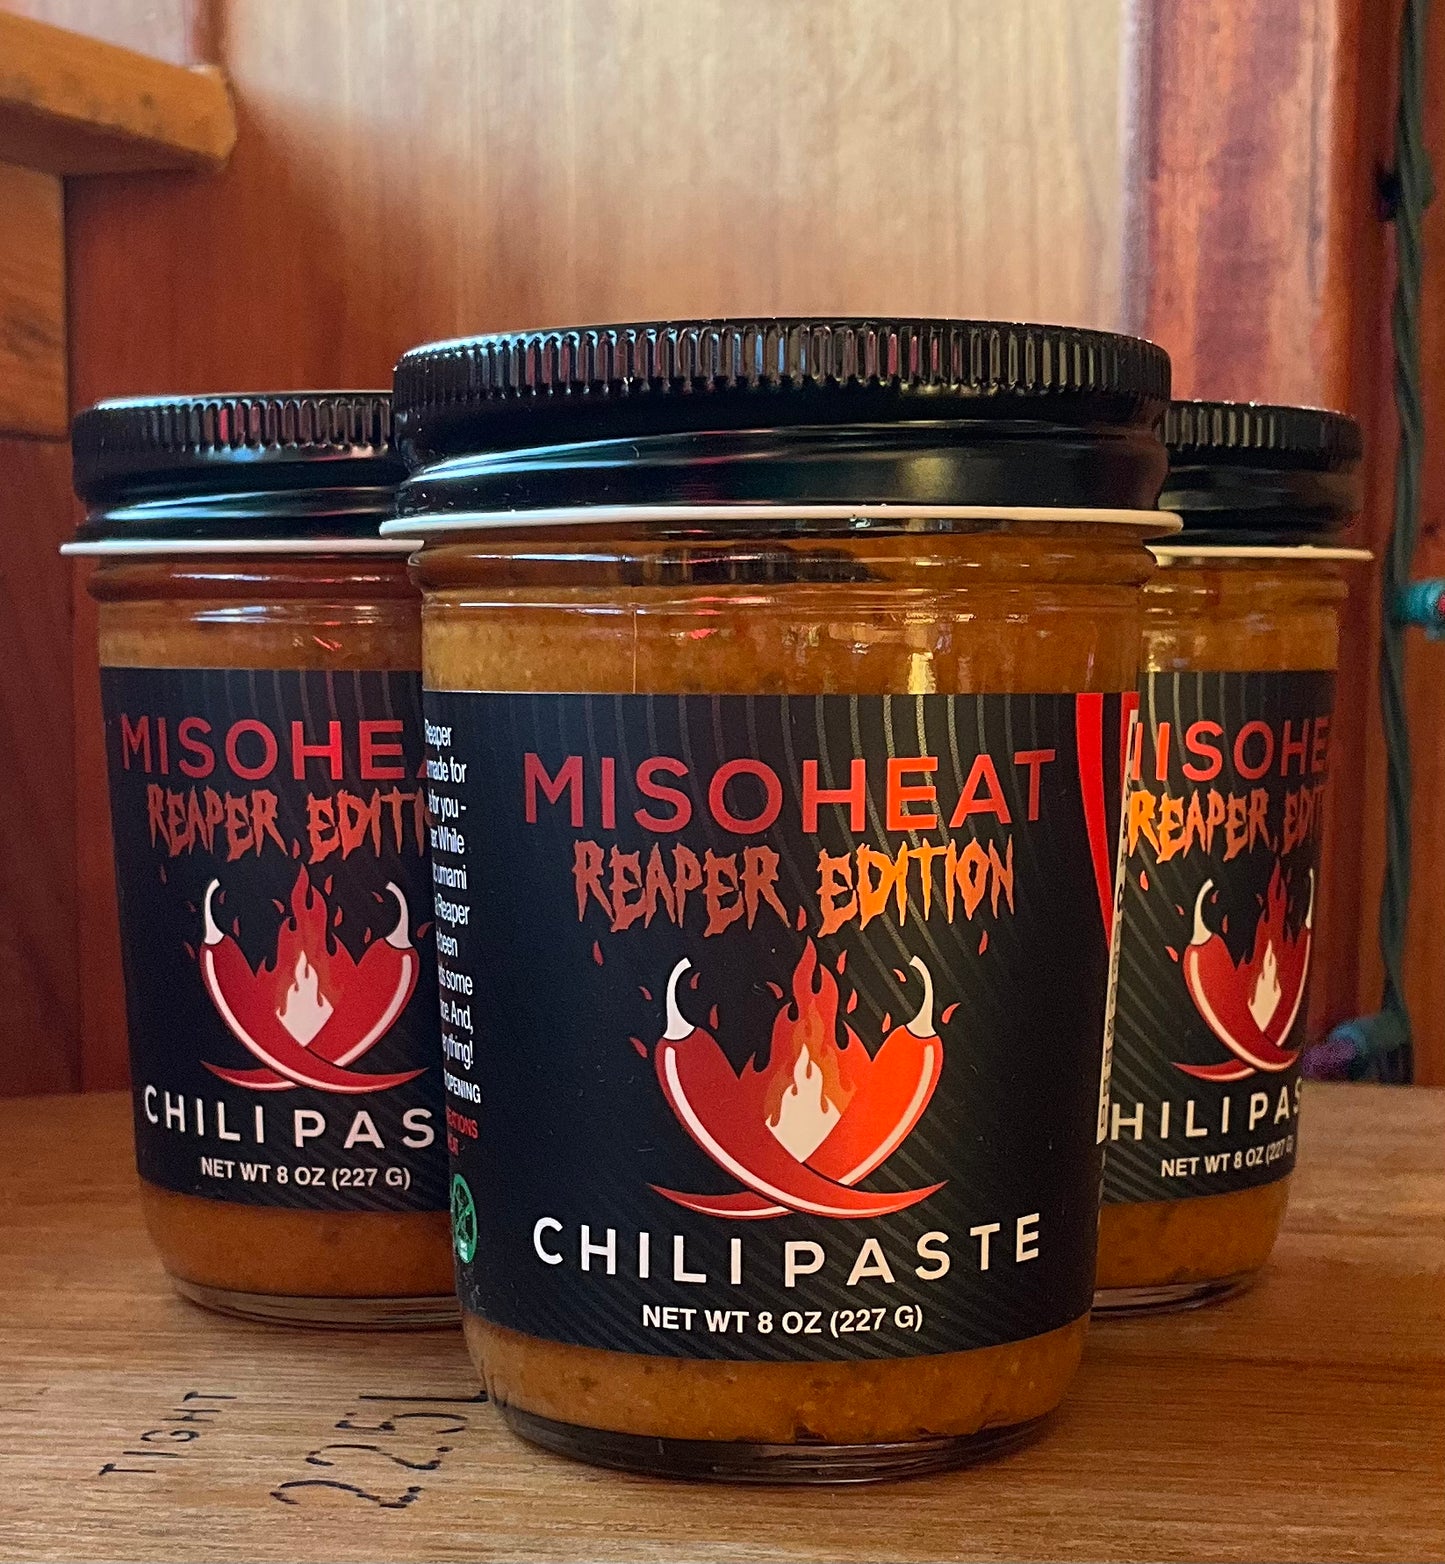 MISOHEAT Chili Paste REAPER EDITION